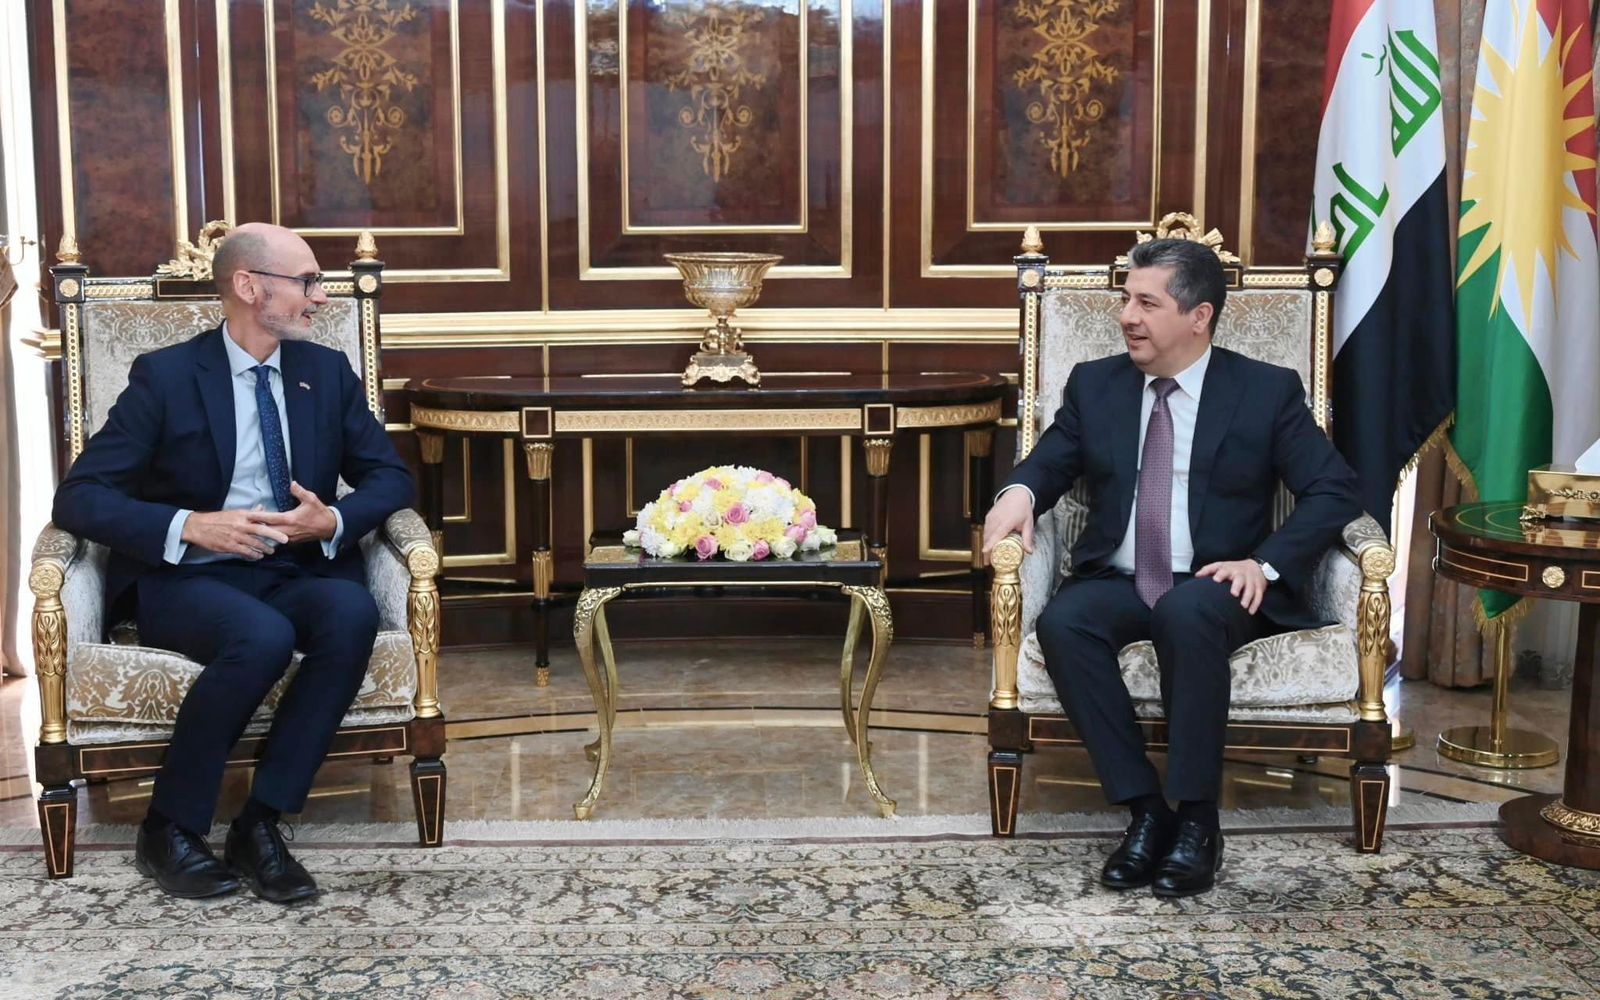 مسرور بارزاني يبحث مع السفير البريطاني اصلاحات حكومة كوردستان وانتخابات برلمان الاقليم